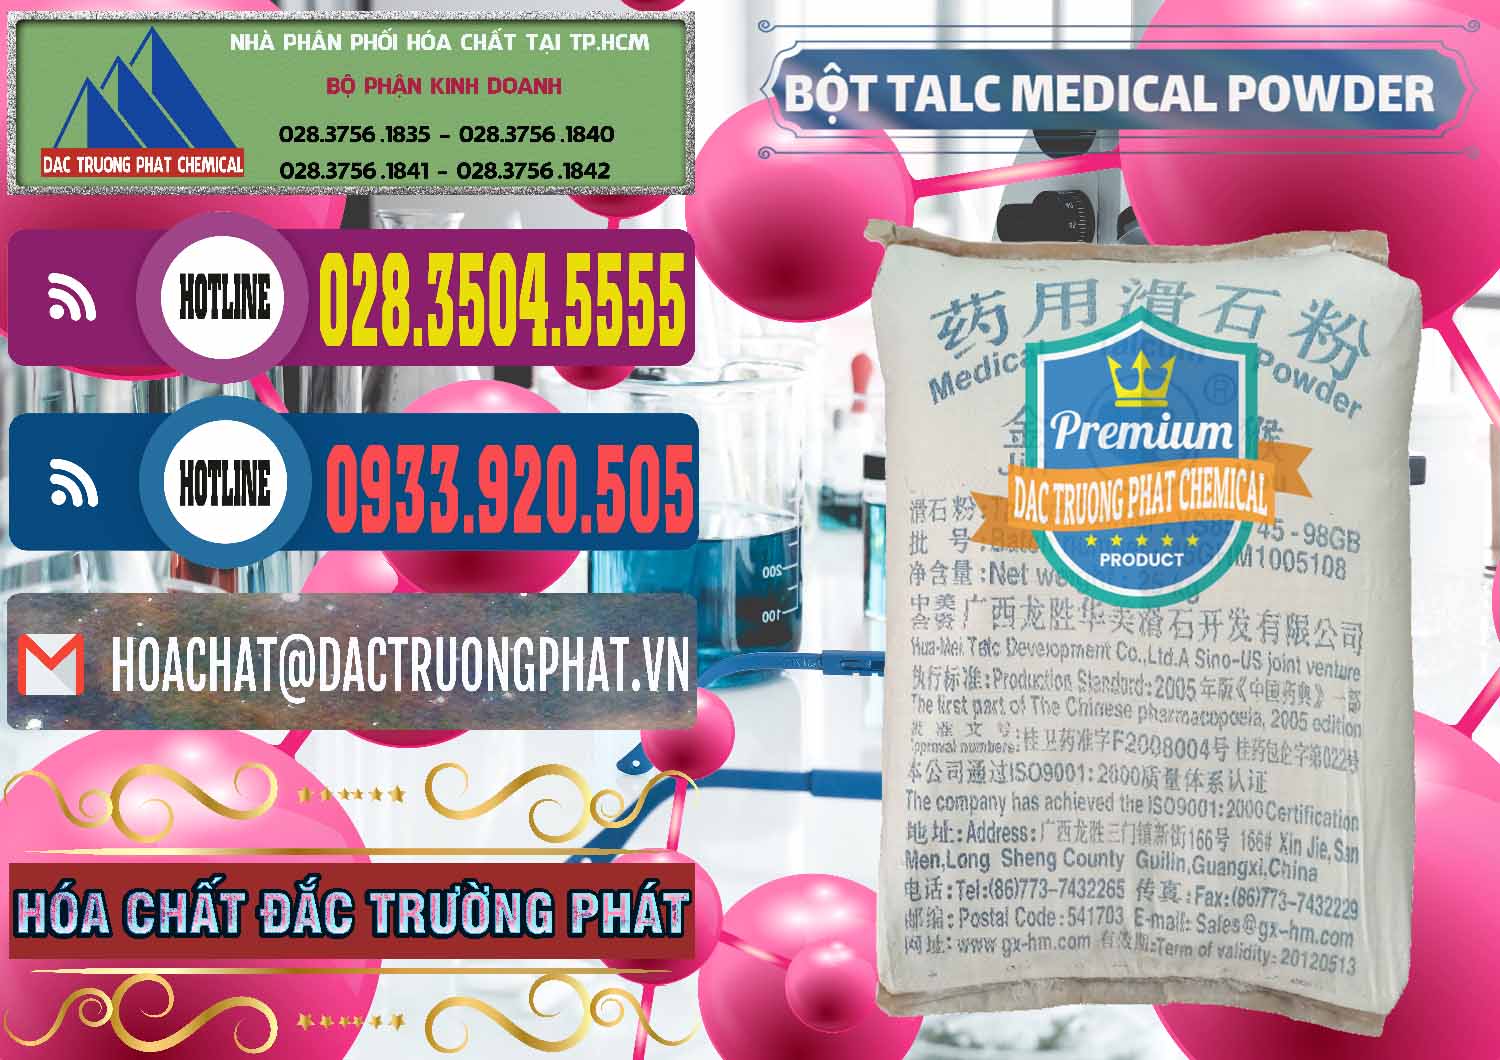 Cty chuyên bán & cung cấp Bột Talc Medical Powder Trung Quốc China - 0036 - Chuyên bán _ cung cấp hóa chất tại TP.HCM - muabanhoachat.com.vn